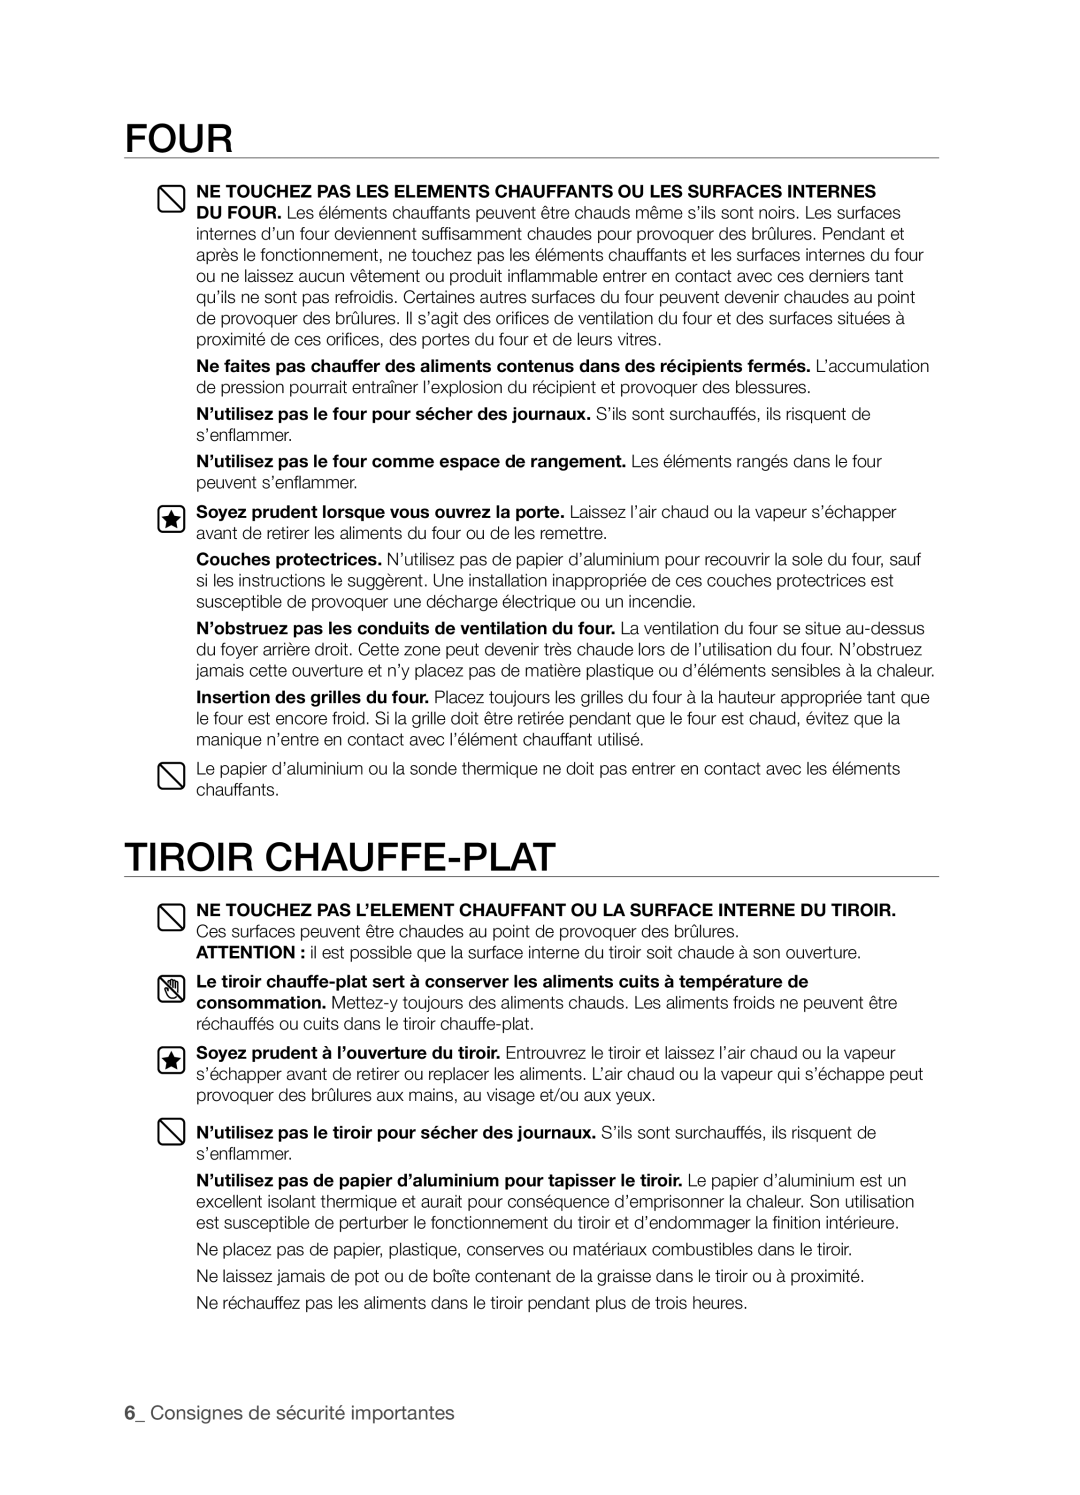 Samsung FTQ352IWX user manual Four, Tiroir Chauffe-Plat, _ Consignes de sécurité importantes 